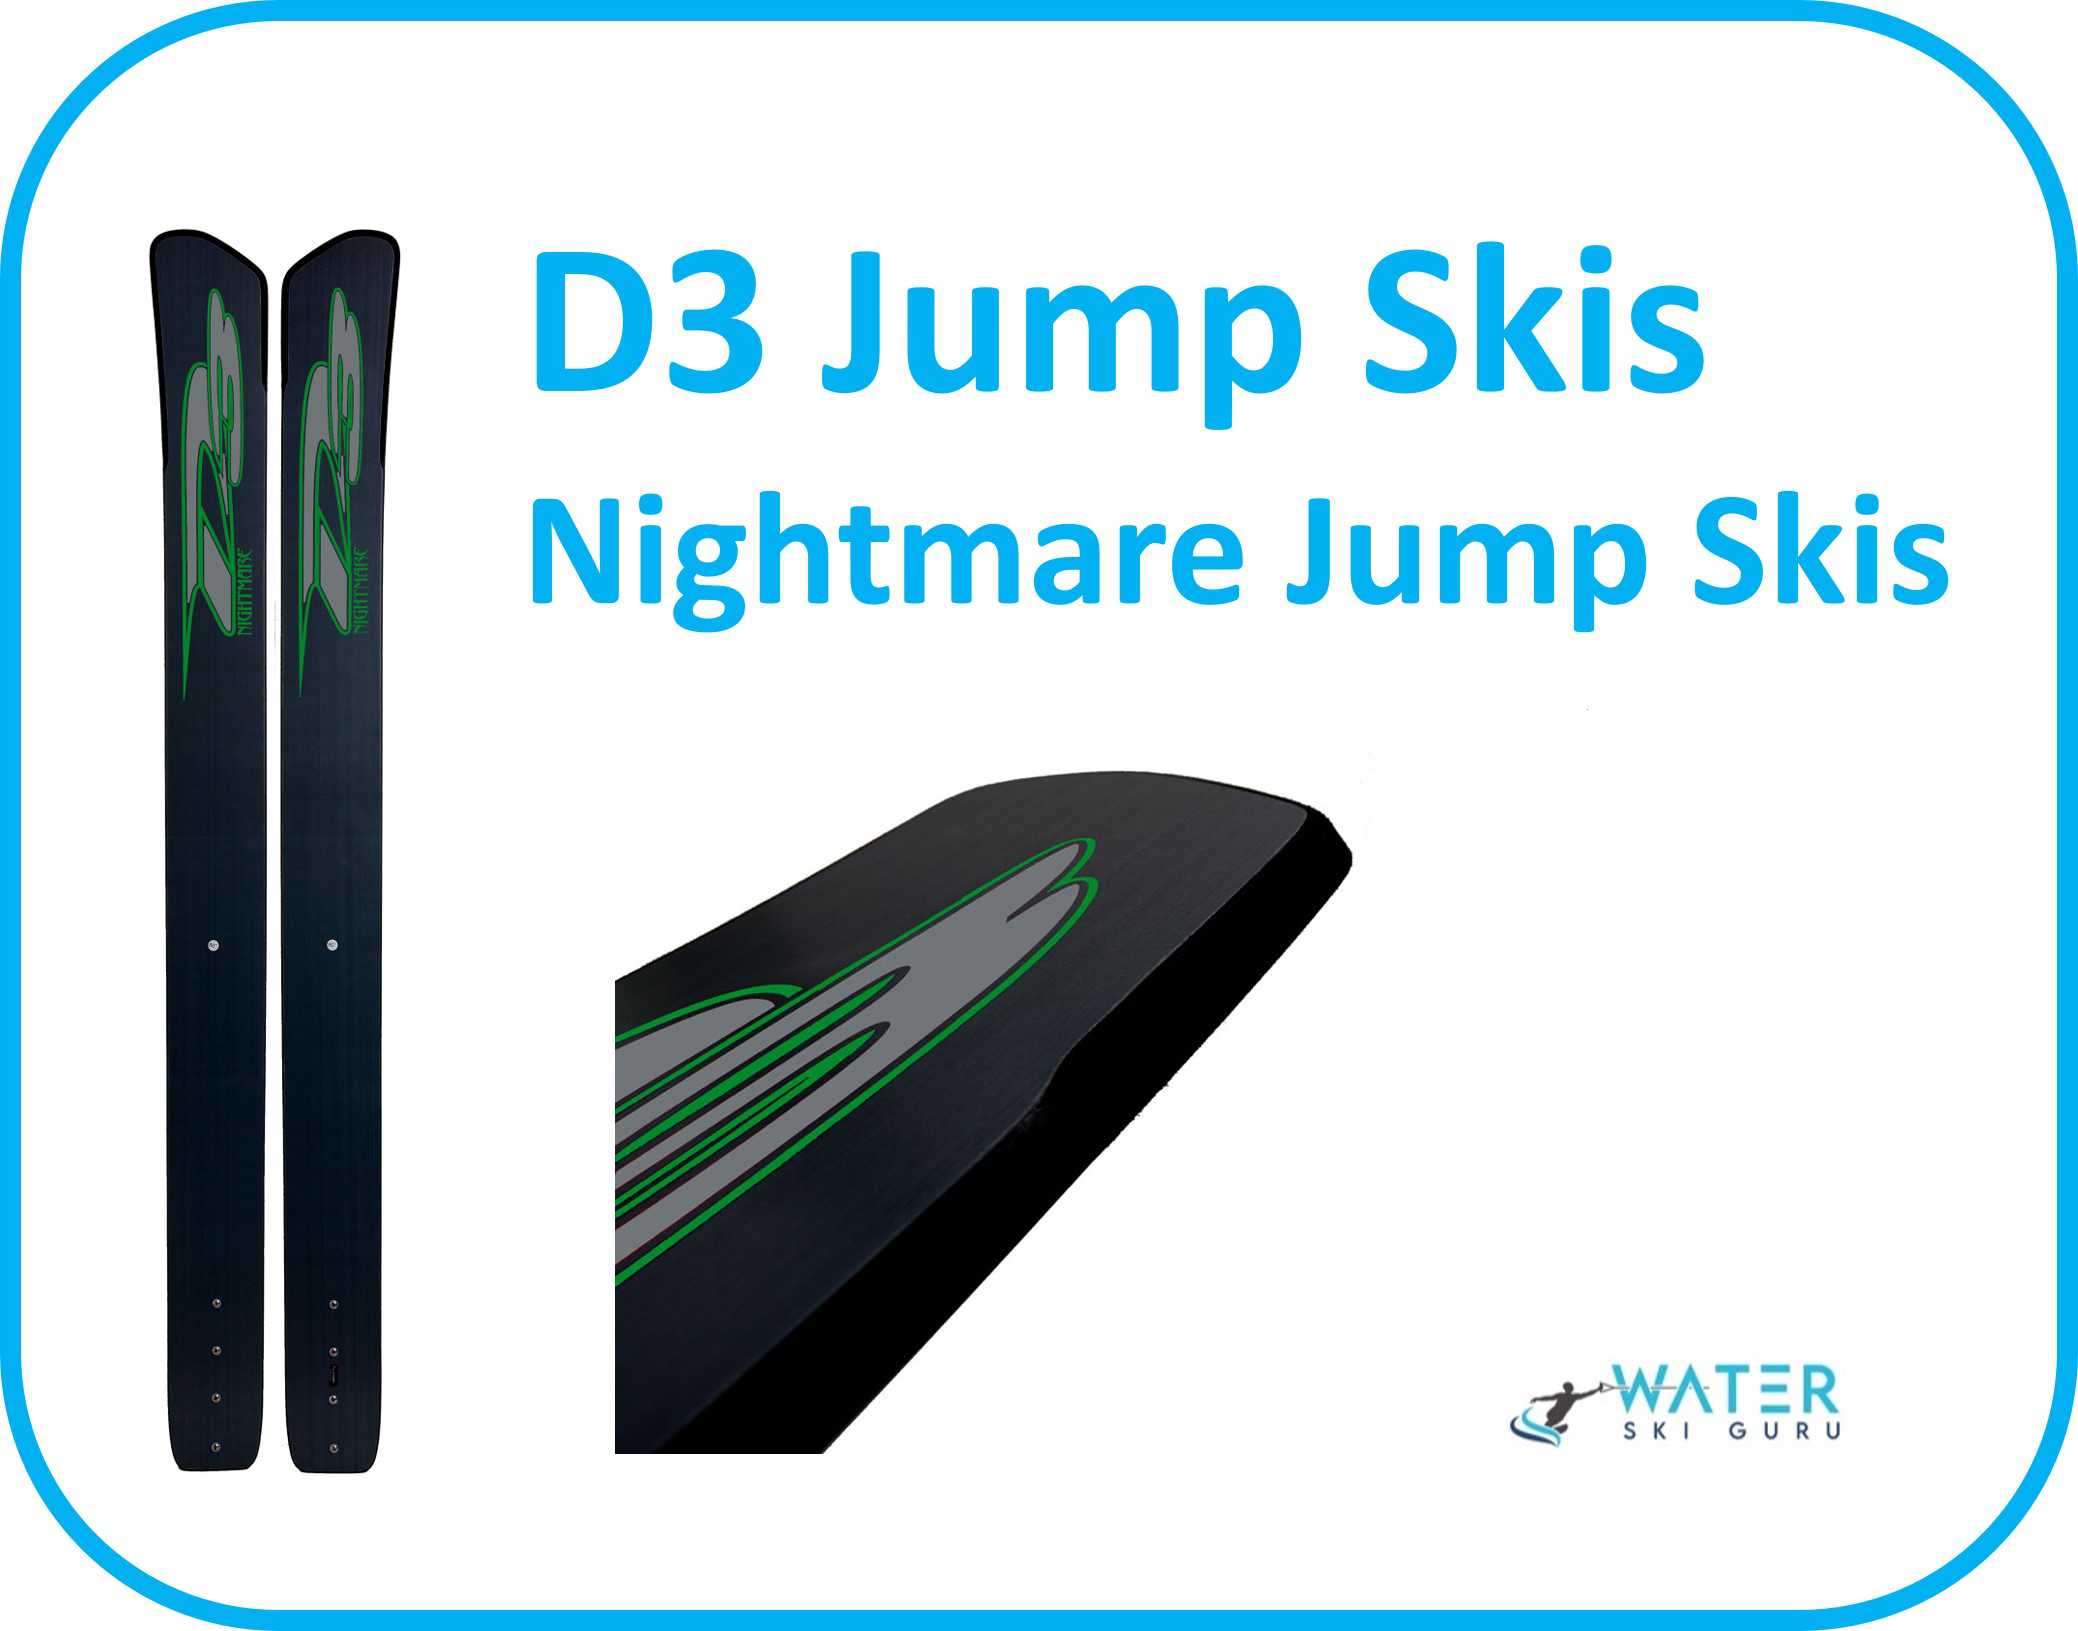 D3 Jump Skis Nightmare Jump Skis